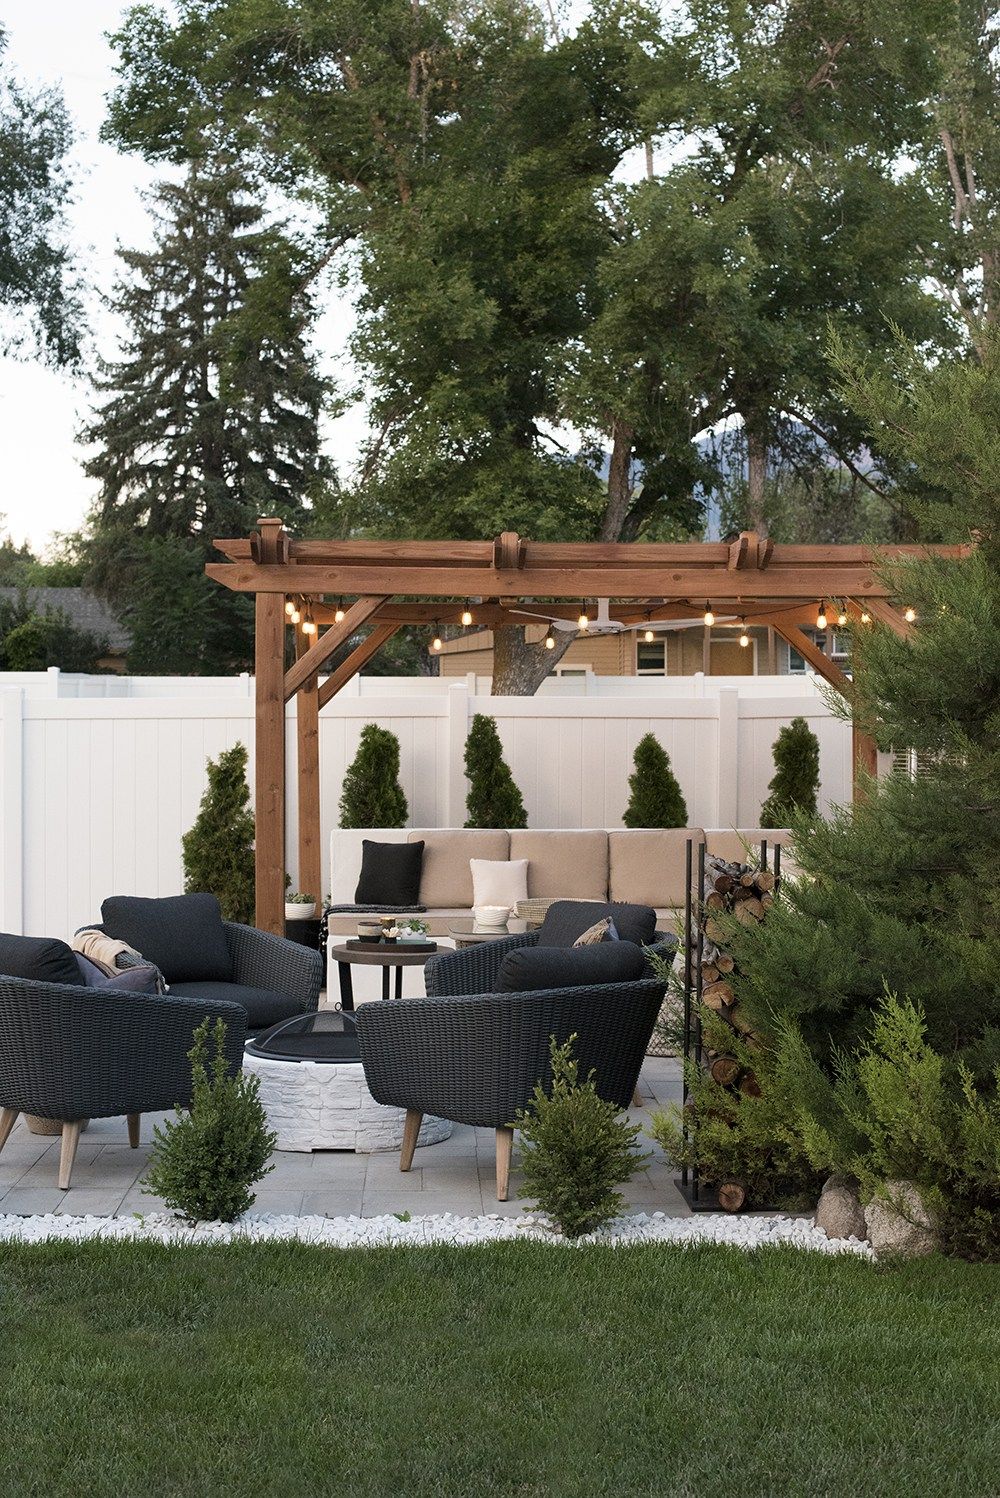 16 Best Pergola Ideas For The Backyard, Garden Pergola Plans Uk